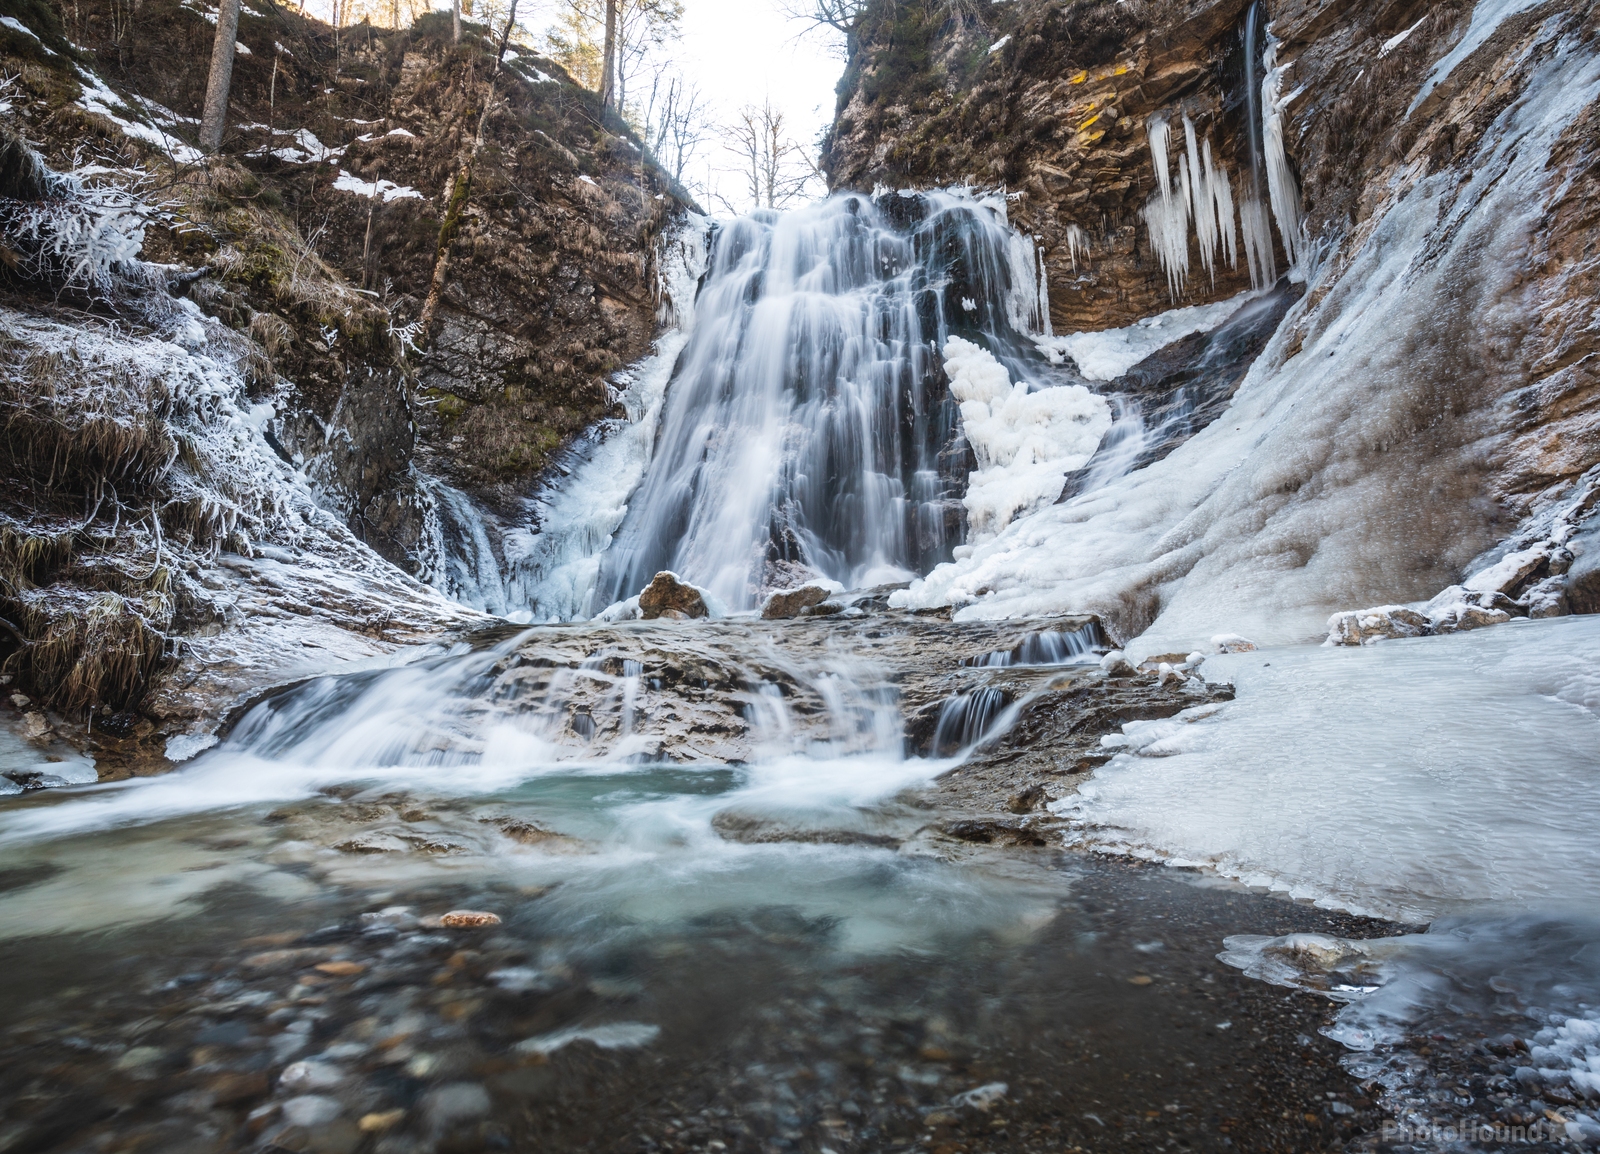 Image of Stegovnik Waterfall by Nina Lozej